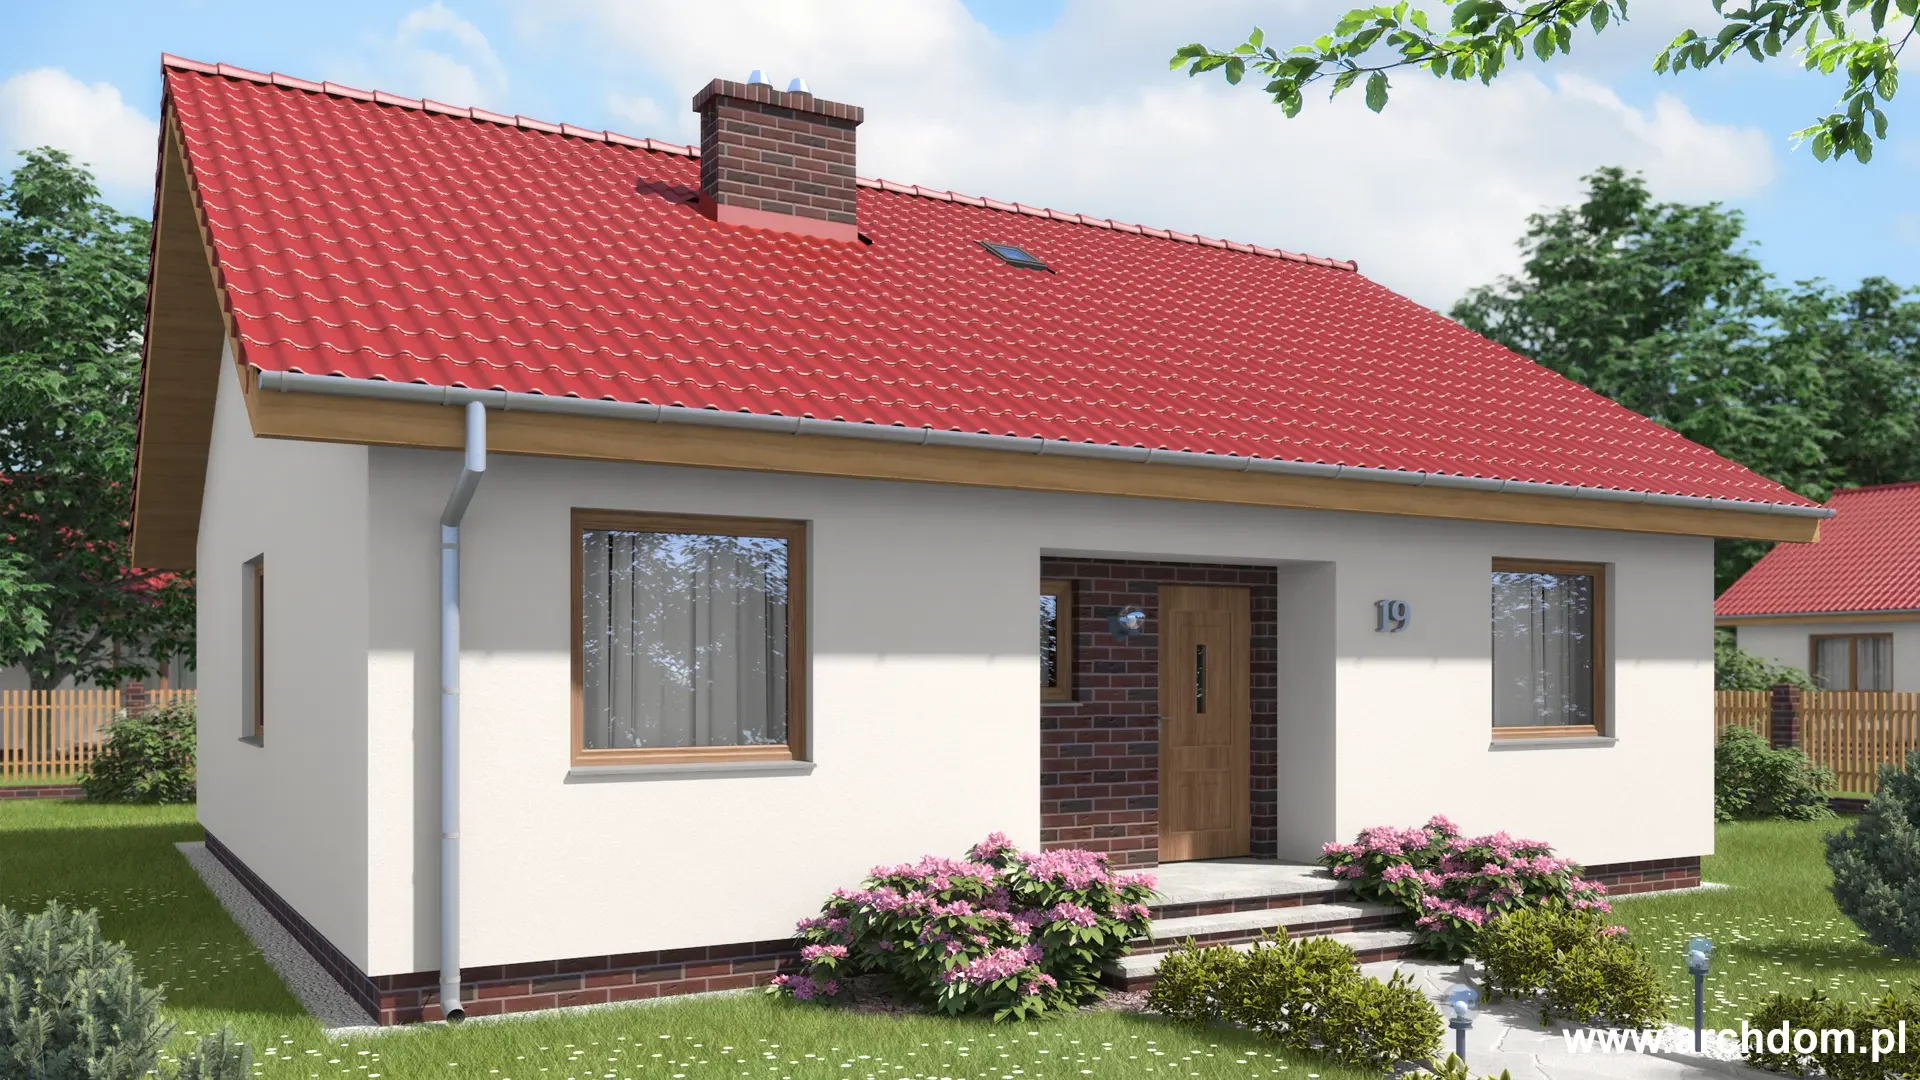 ArchDOM | https://archdom.pl | Projekt domu parterowego jednorodzinnego Rumianek 1 - wizualizacja frontu domu